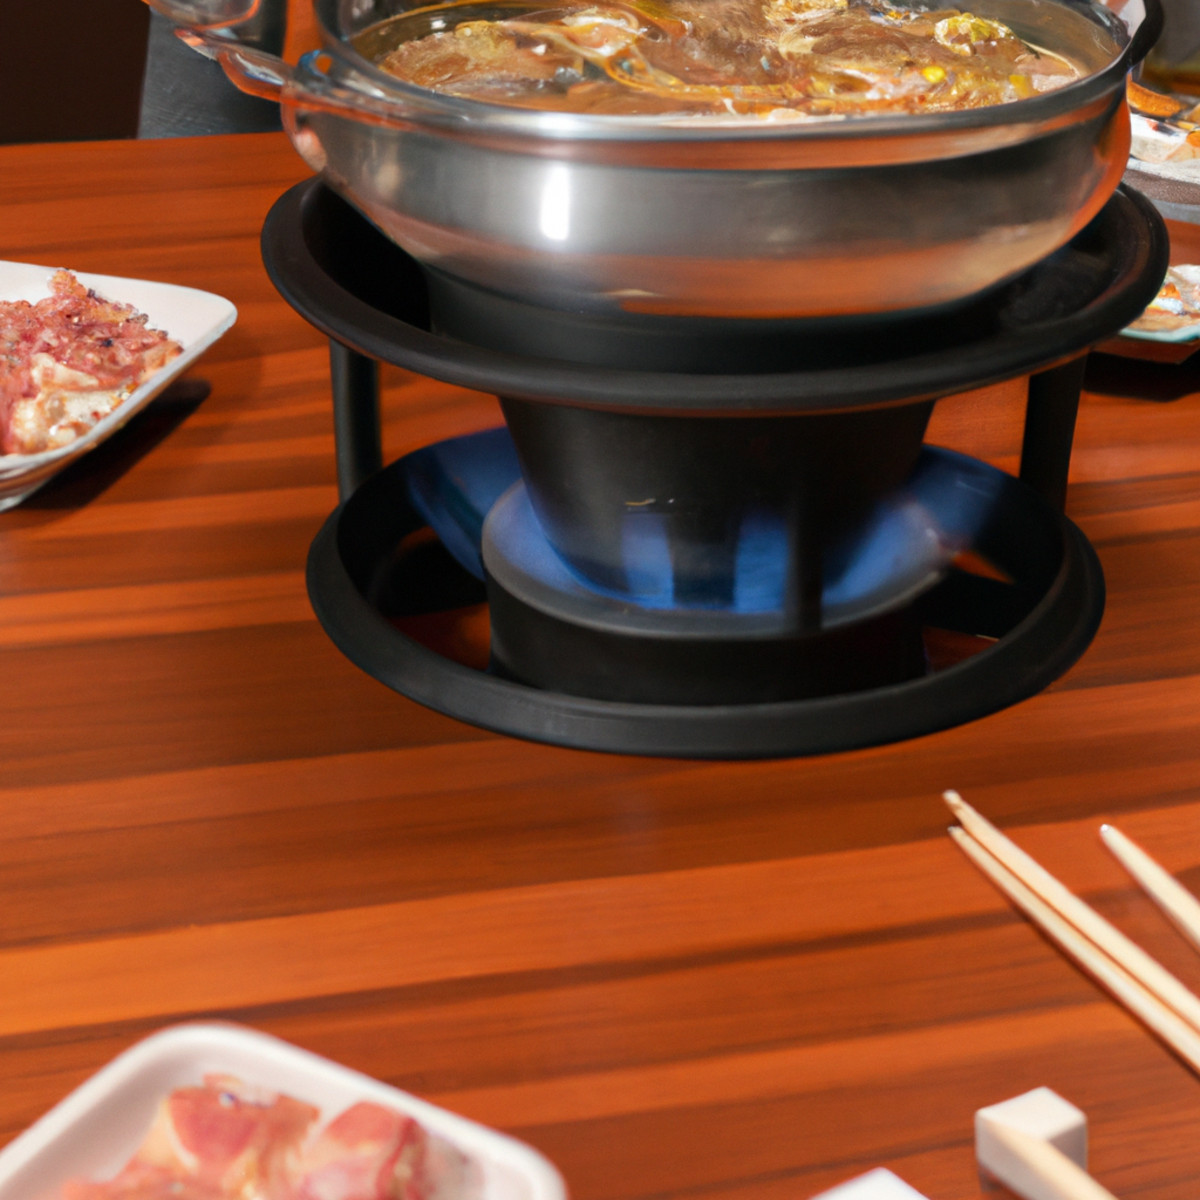 Hibachi vs. Sukiyaki: Comparing Charcoal Grilling to Hot Pot Cooking